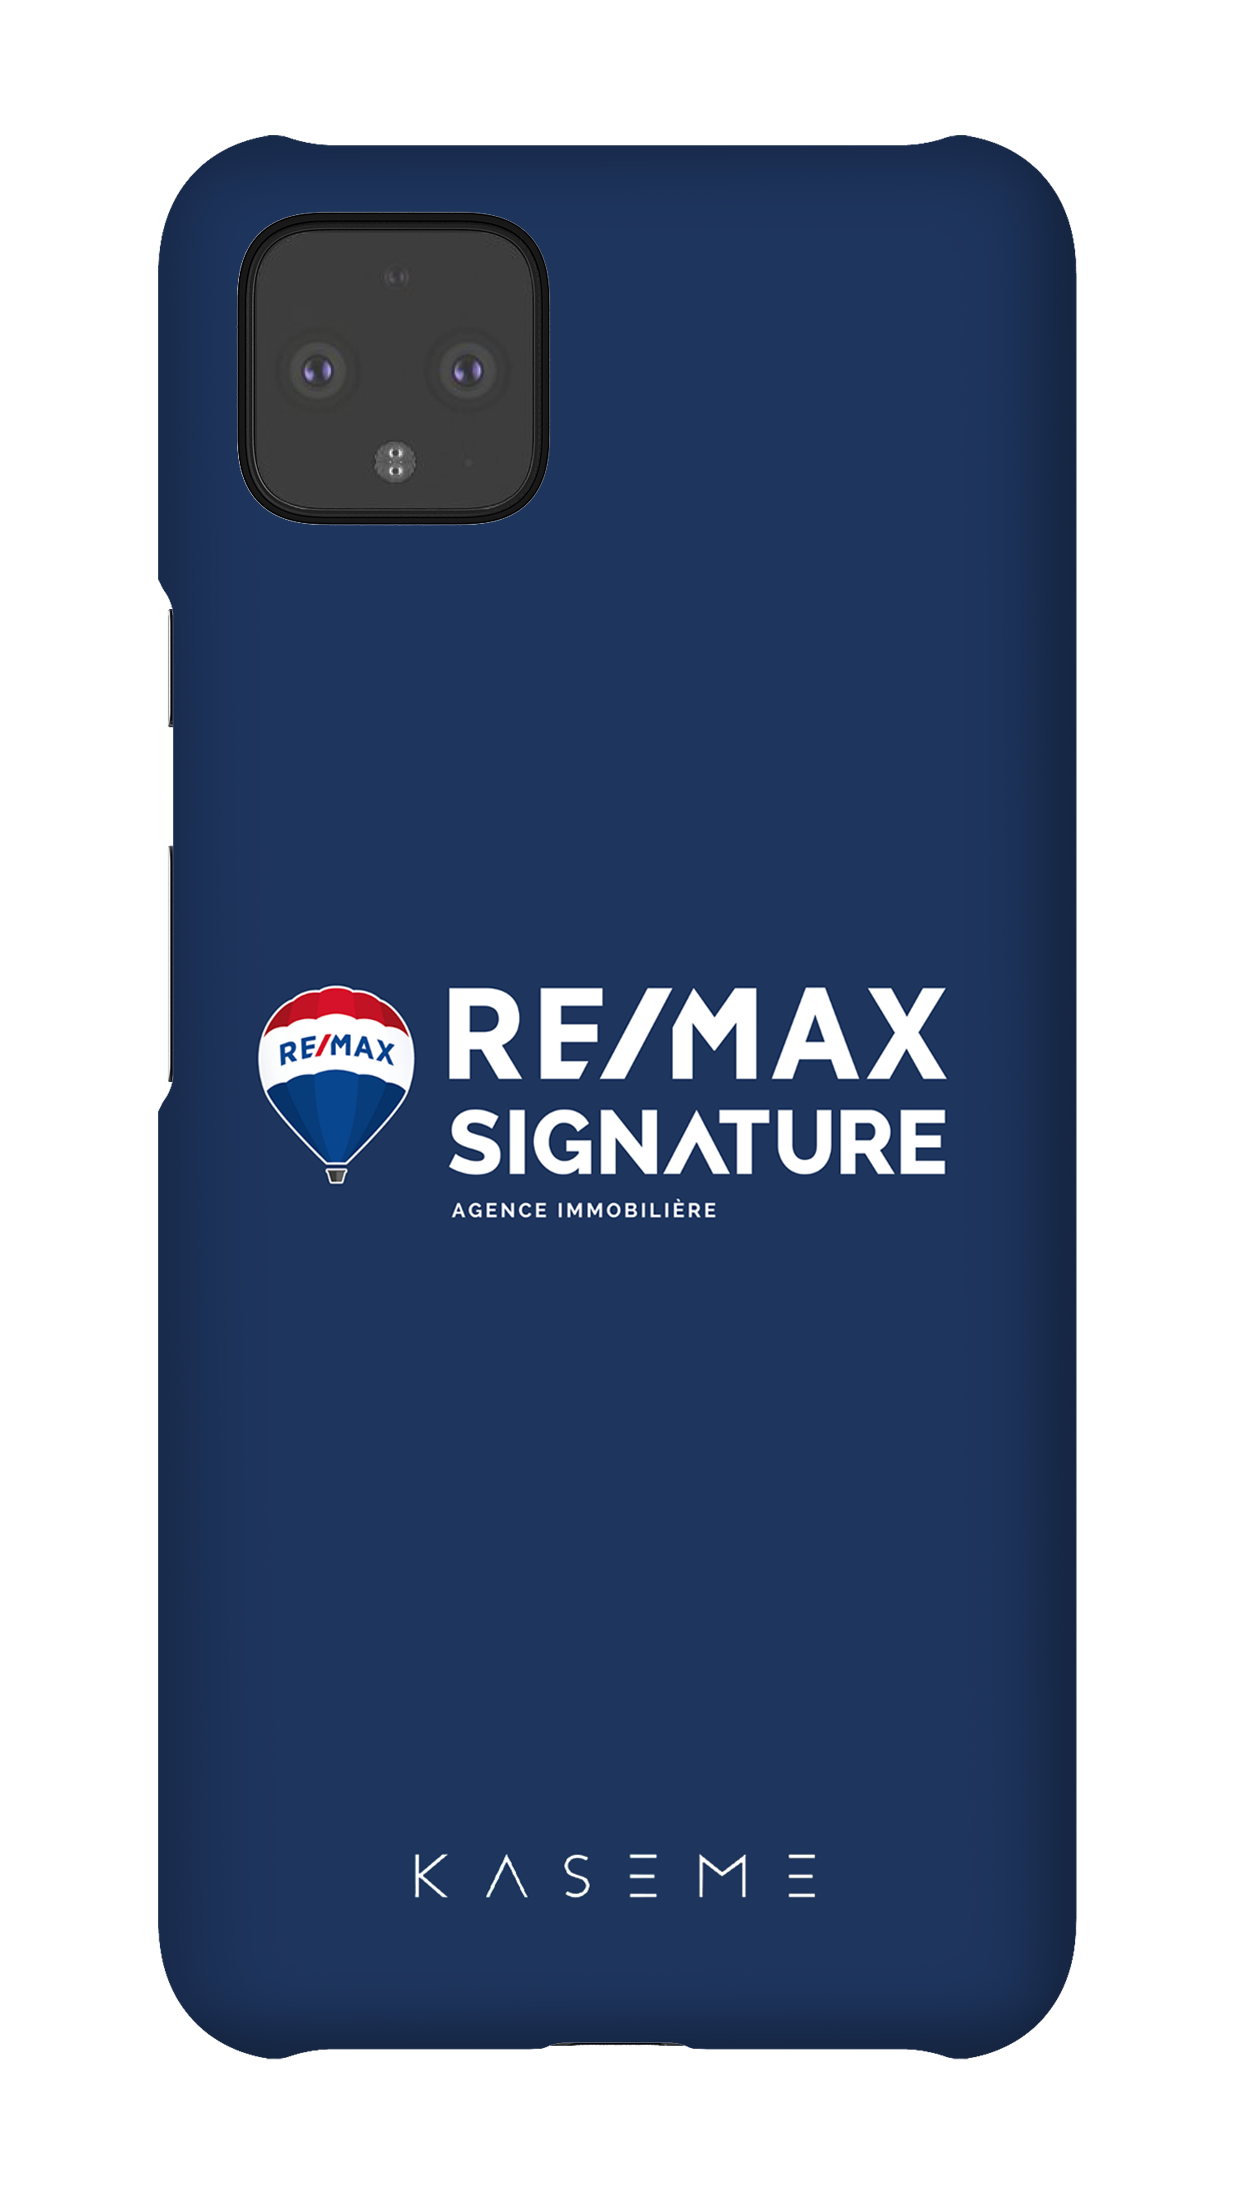 Remax Signature Bleu - Google Pixel 4 XL